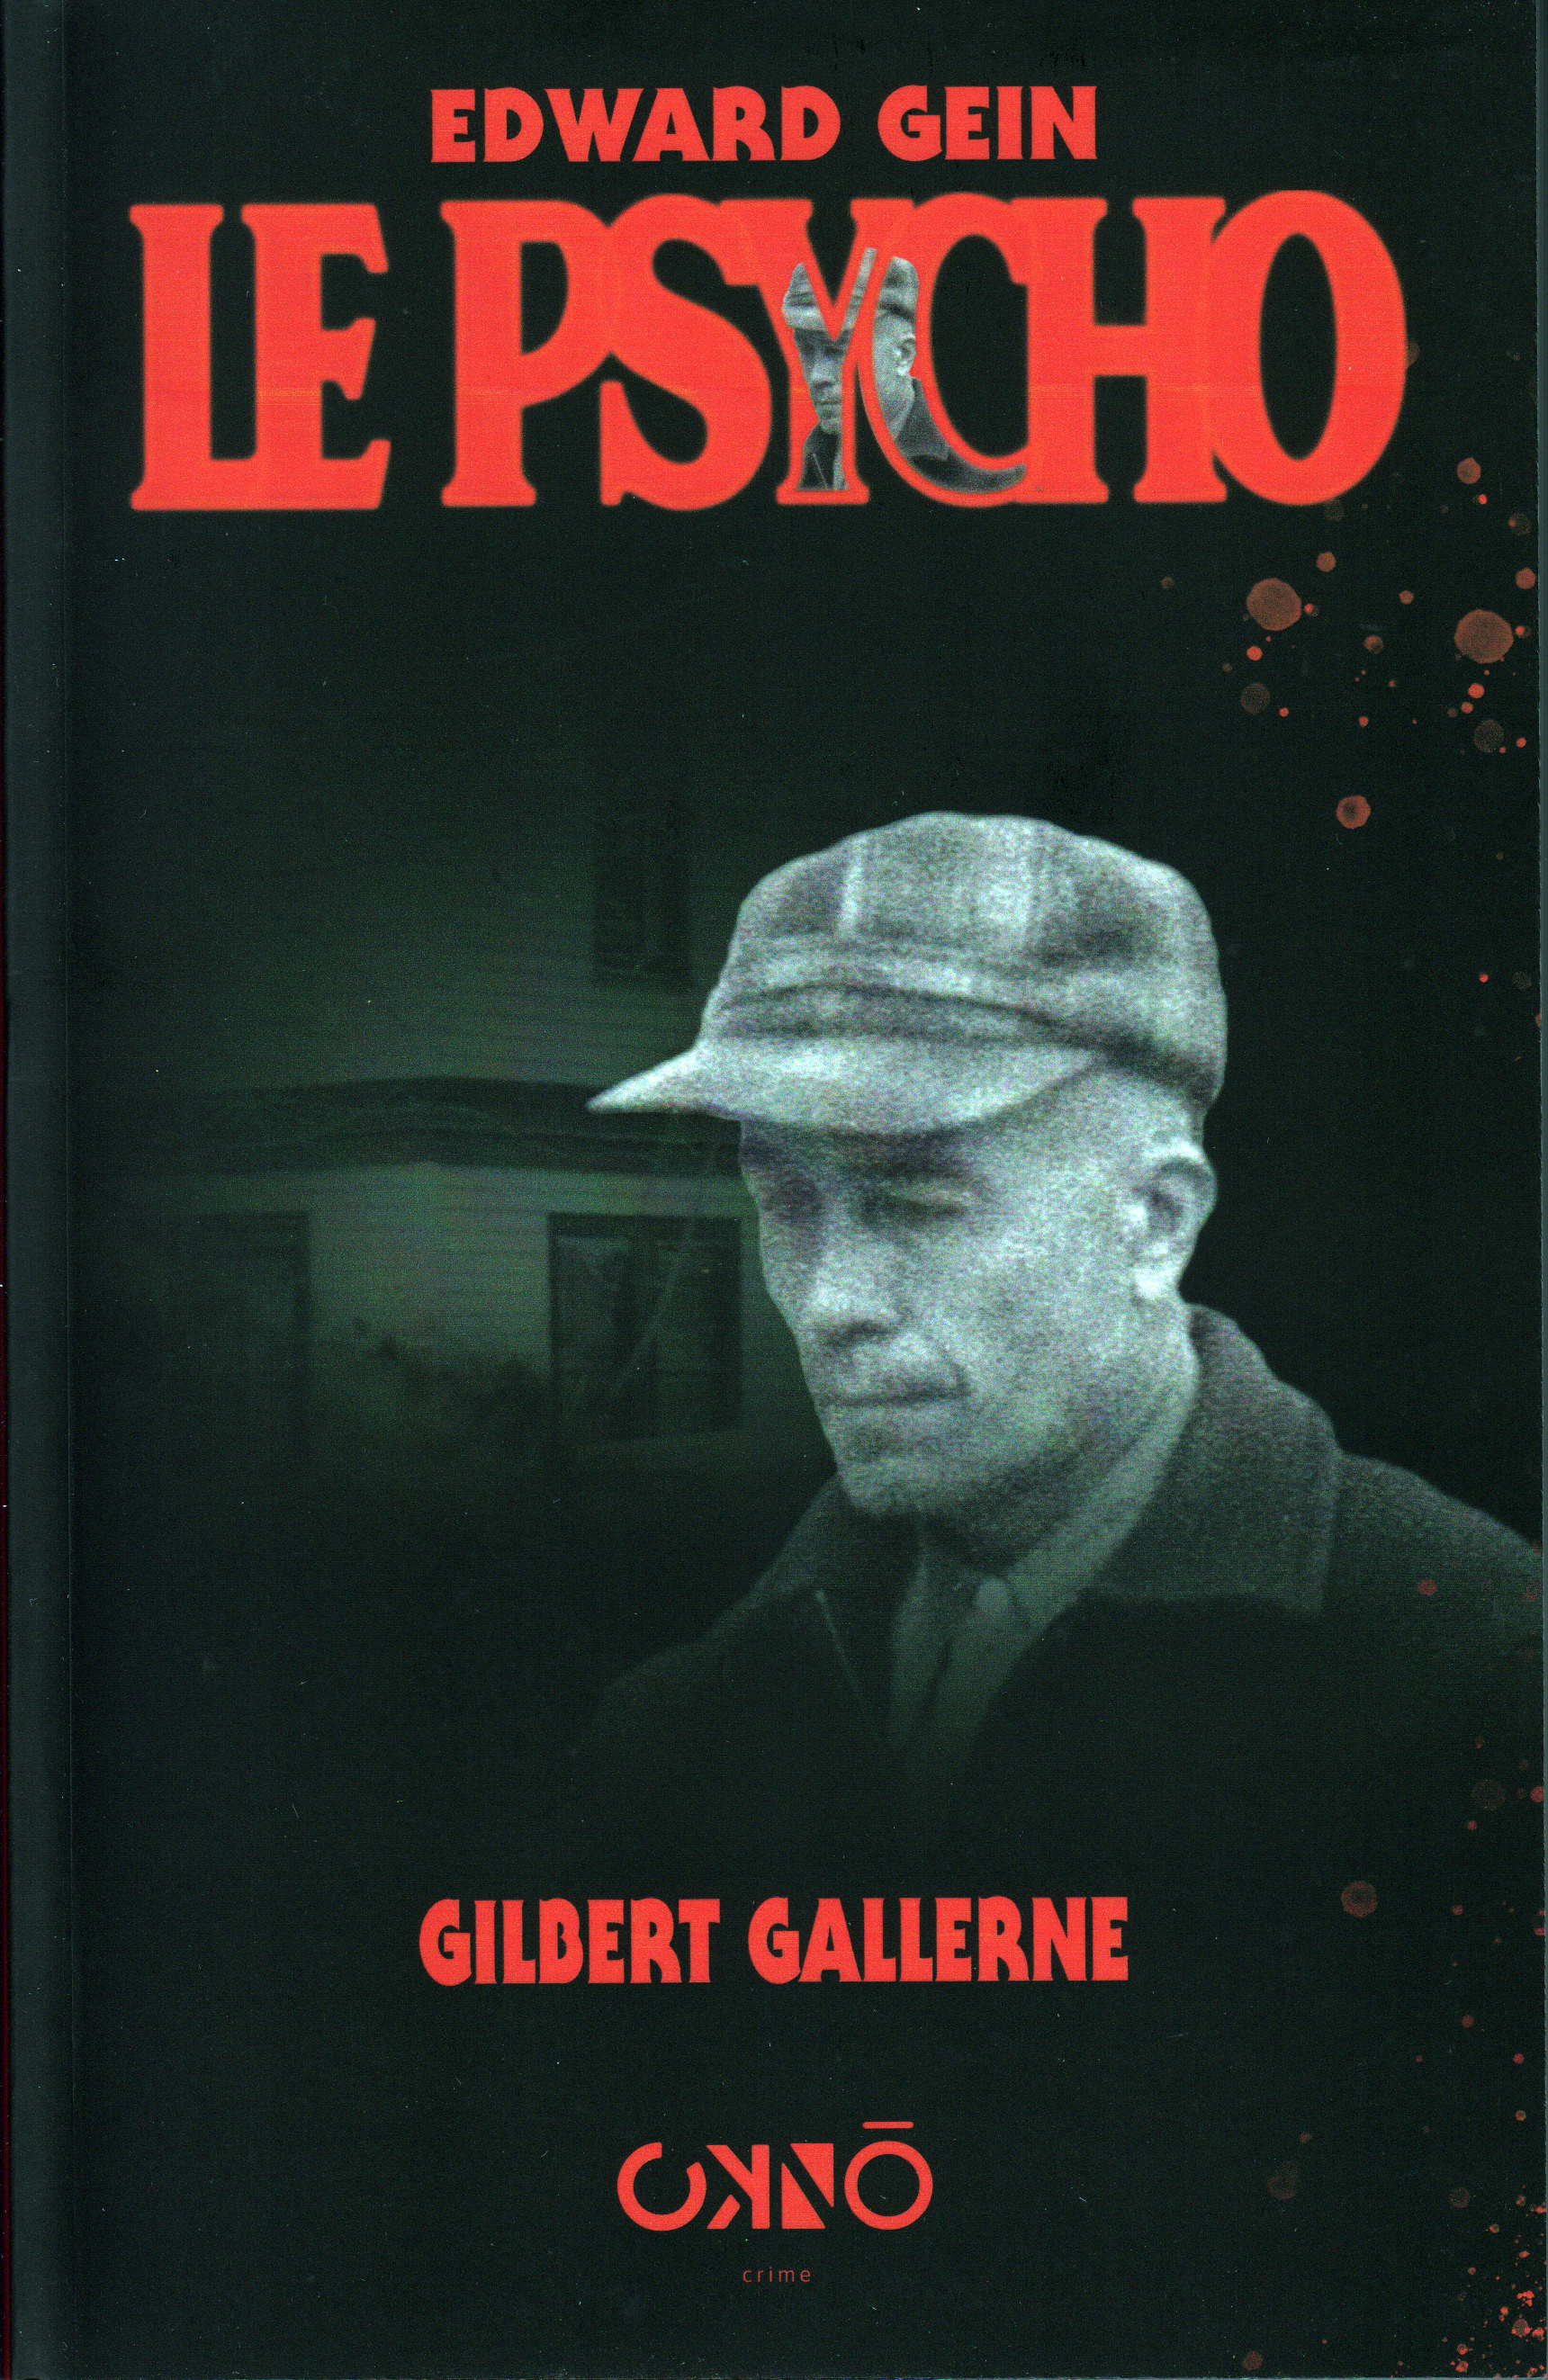 couverture Edward Gein le psycho, éditions Okno